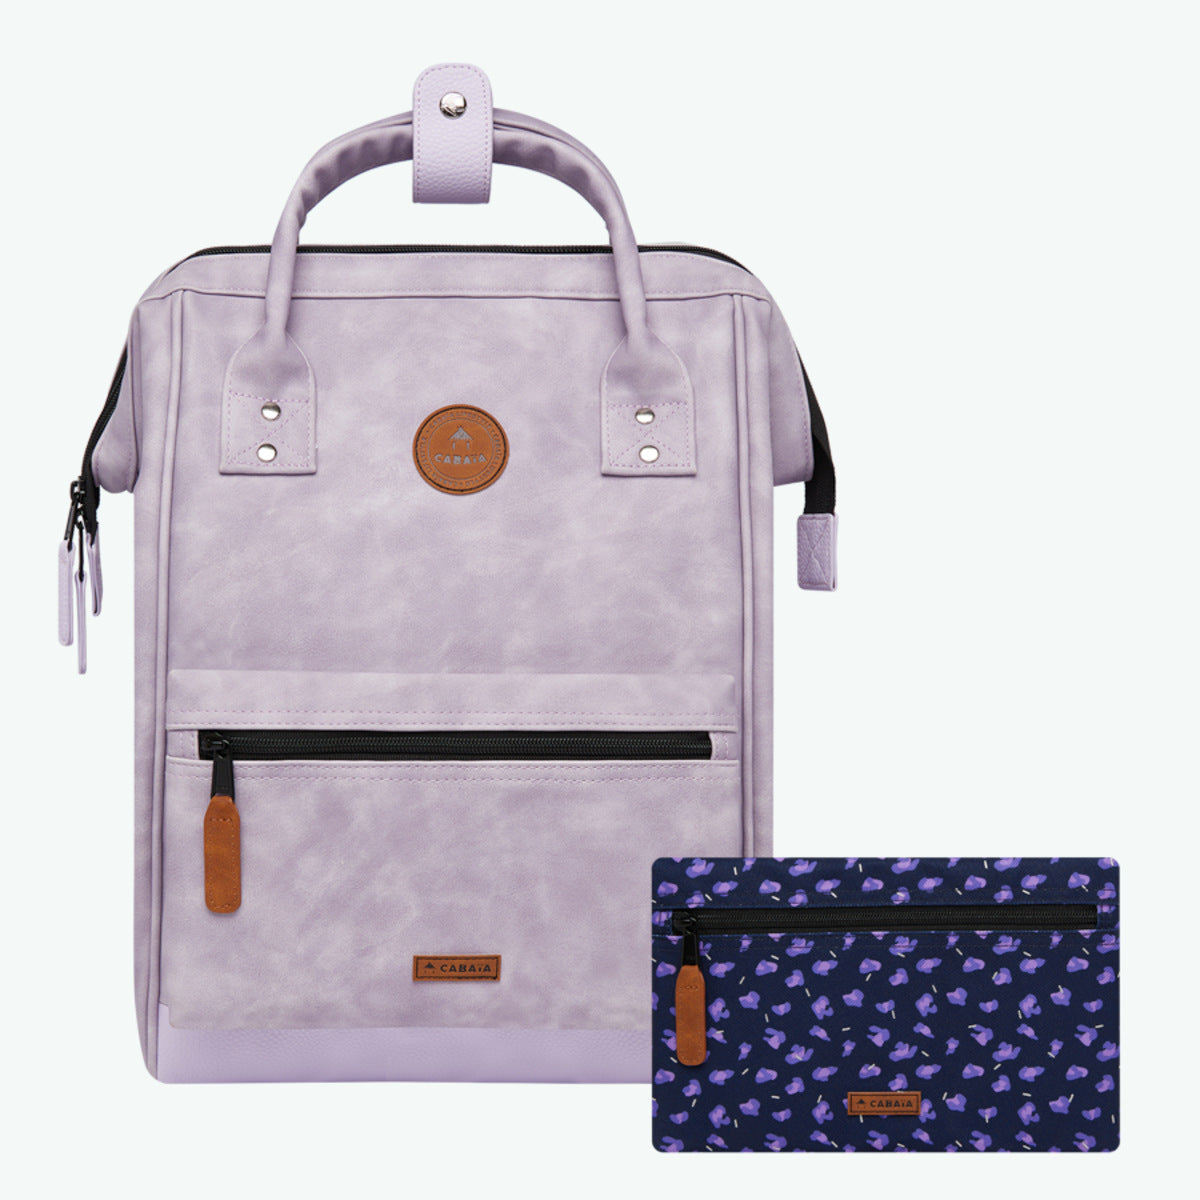 arad-violett-mittel-rucksack